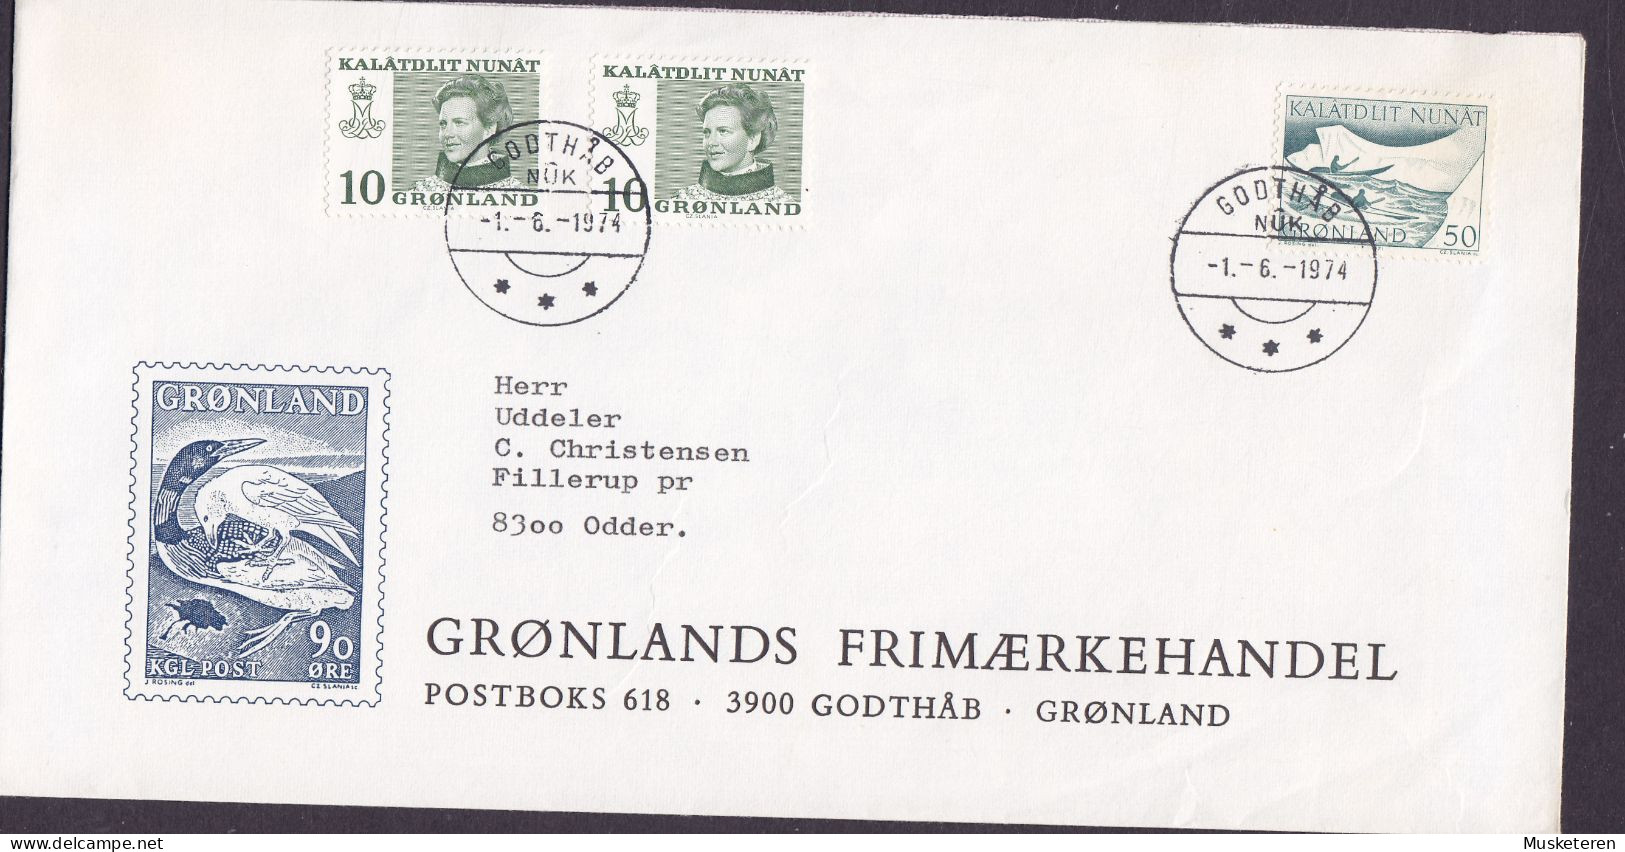 Greenland GRØNLANDS FRIMÆRKEHANDEL Cachet GODTHÅB 1974 Cover Brief ODDER Denmark Kajak Post (Cz. Slania) - Storia Postale